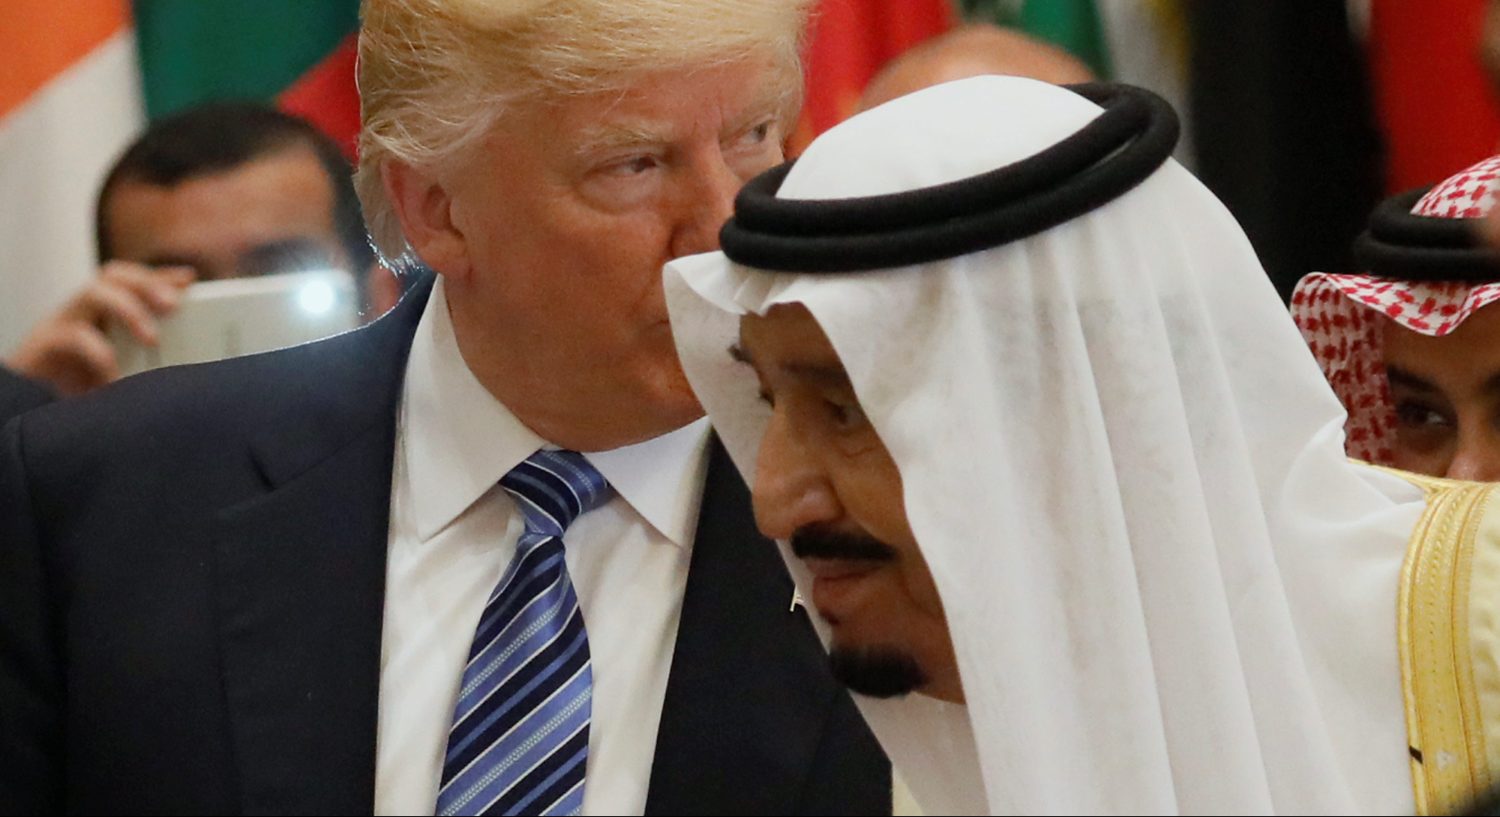 U.S. President Donald Trump and Saudi Arabia's King Salman bin Abdulaziz Al Saud (R) attend the Arab Islamic American Summit in Riyadh, Saudi Arabia May 21, 2017. REUTERS/Jonathan Ernst - RTX36TTB